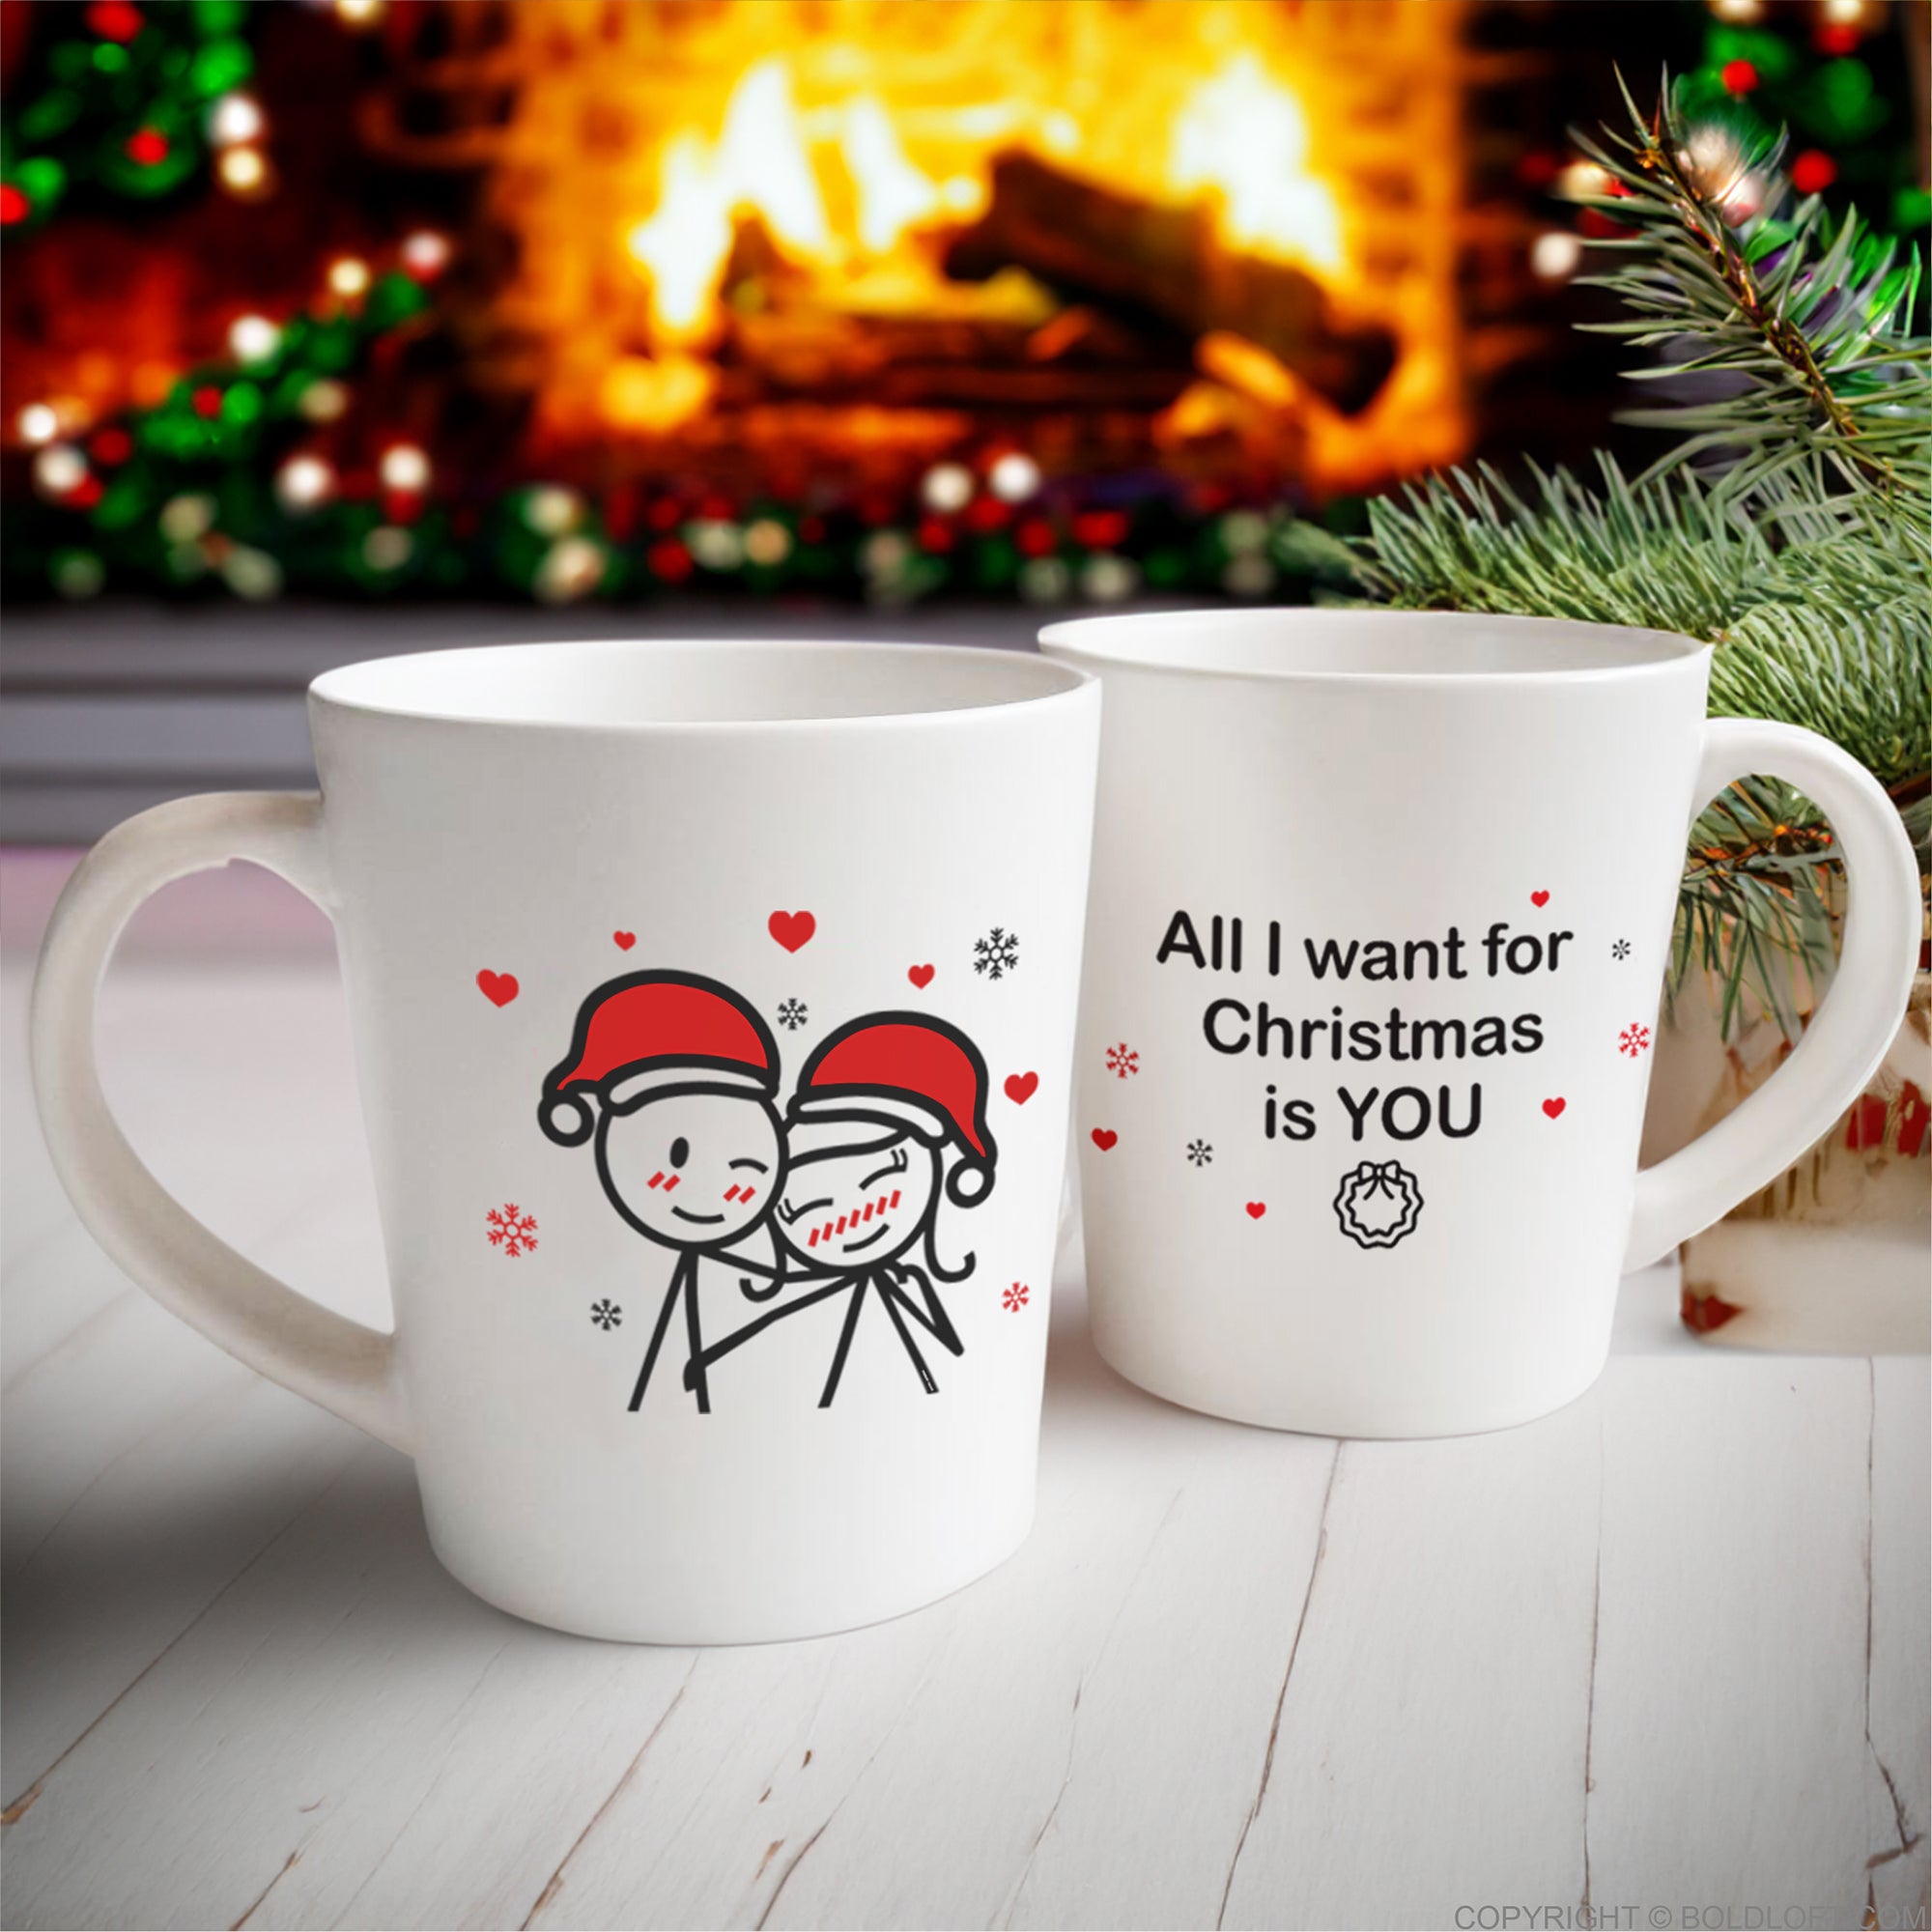 BoldLoft Merry Christmas couple coffee mugs, Christmas mugs for him and her